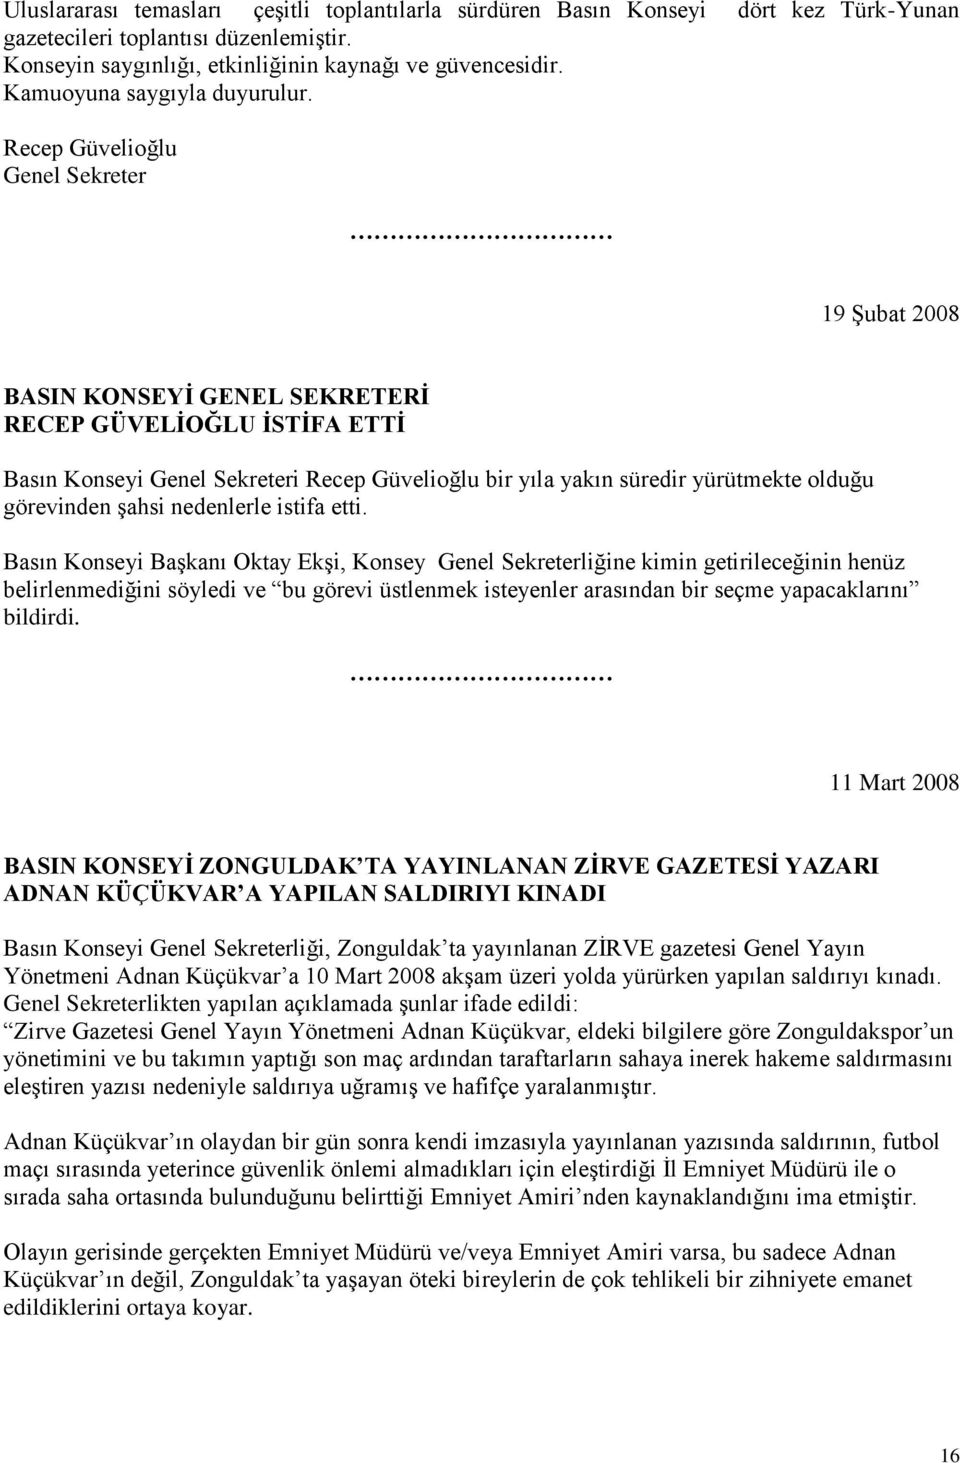 Recep Güvelioğlu Genel Sekreter 19 ġubat 2008 BASIN KONSEYĠ GENEL SEKRETERĠ RECEP GÜVELĠOĞLU ĠSTĠFA ETTĠ Basın Konseyi Genel Sekreteri Recep Güvelioğlu bir yıla yakın süredir yürütmekte olduğu